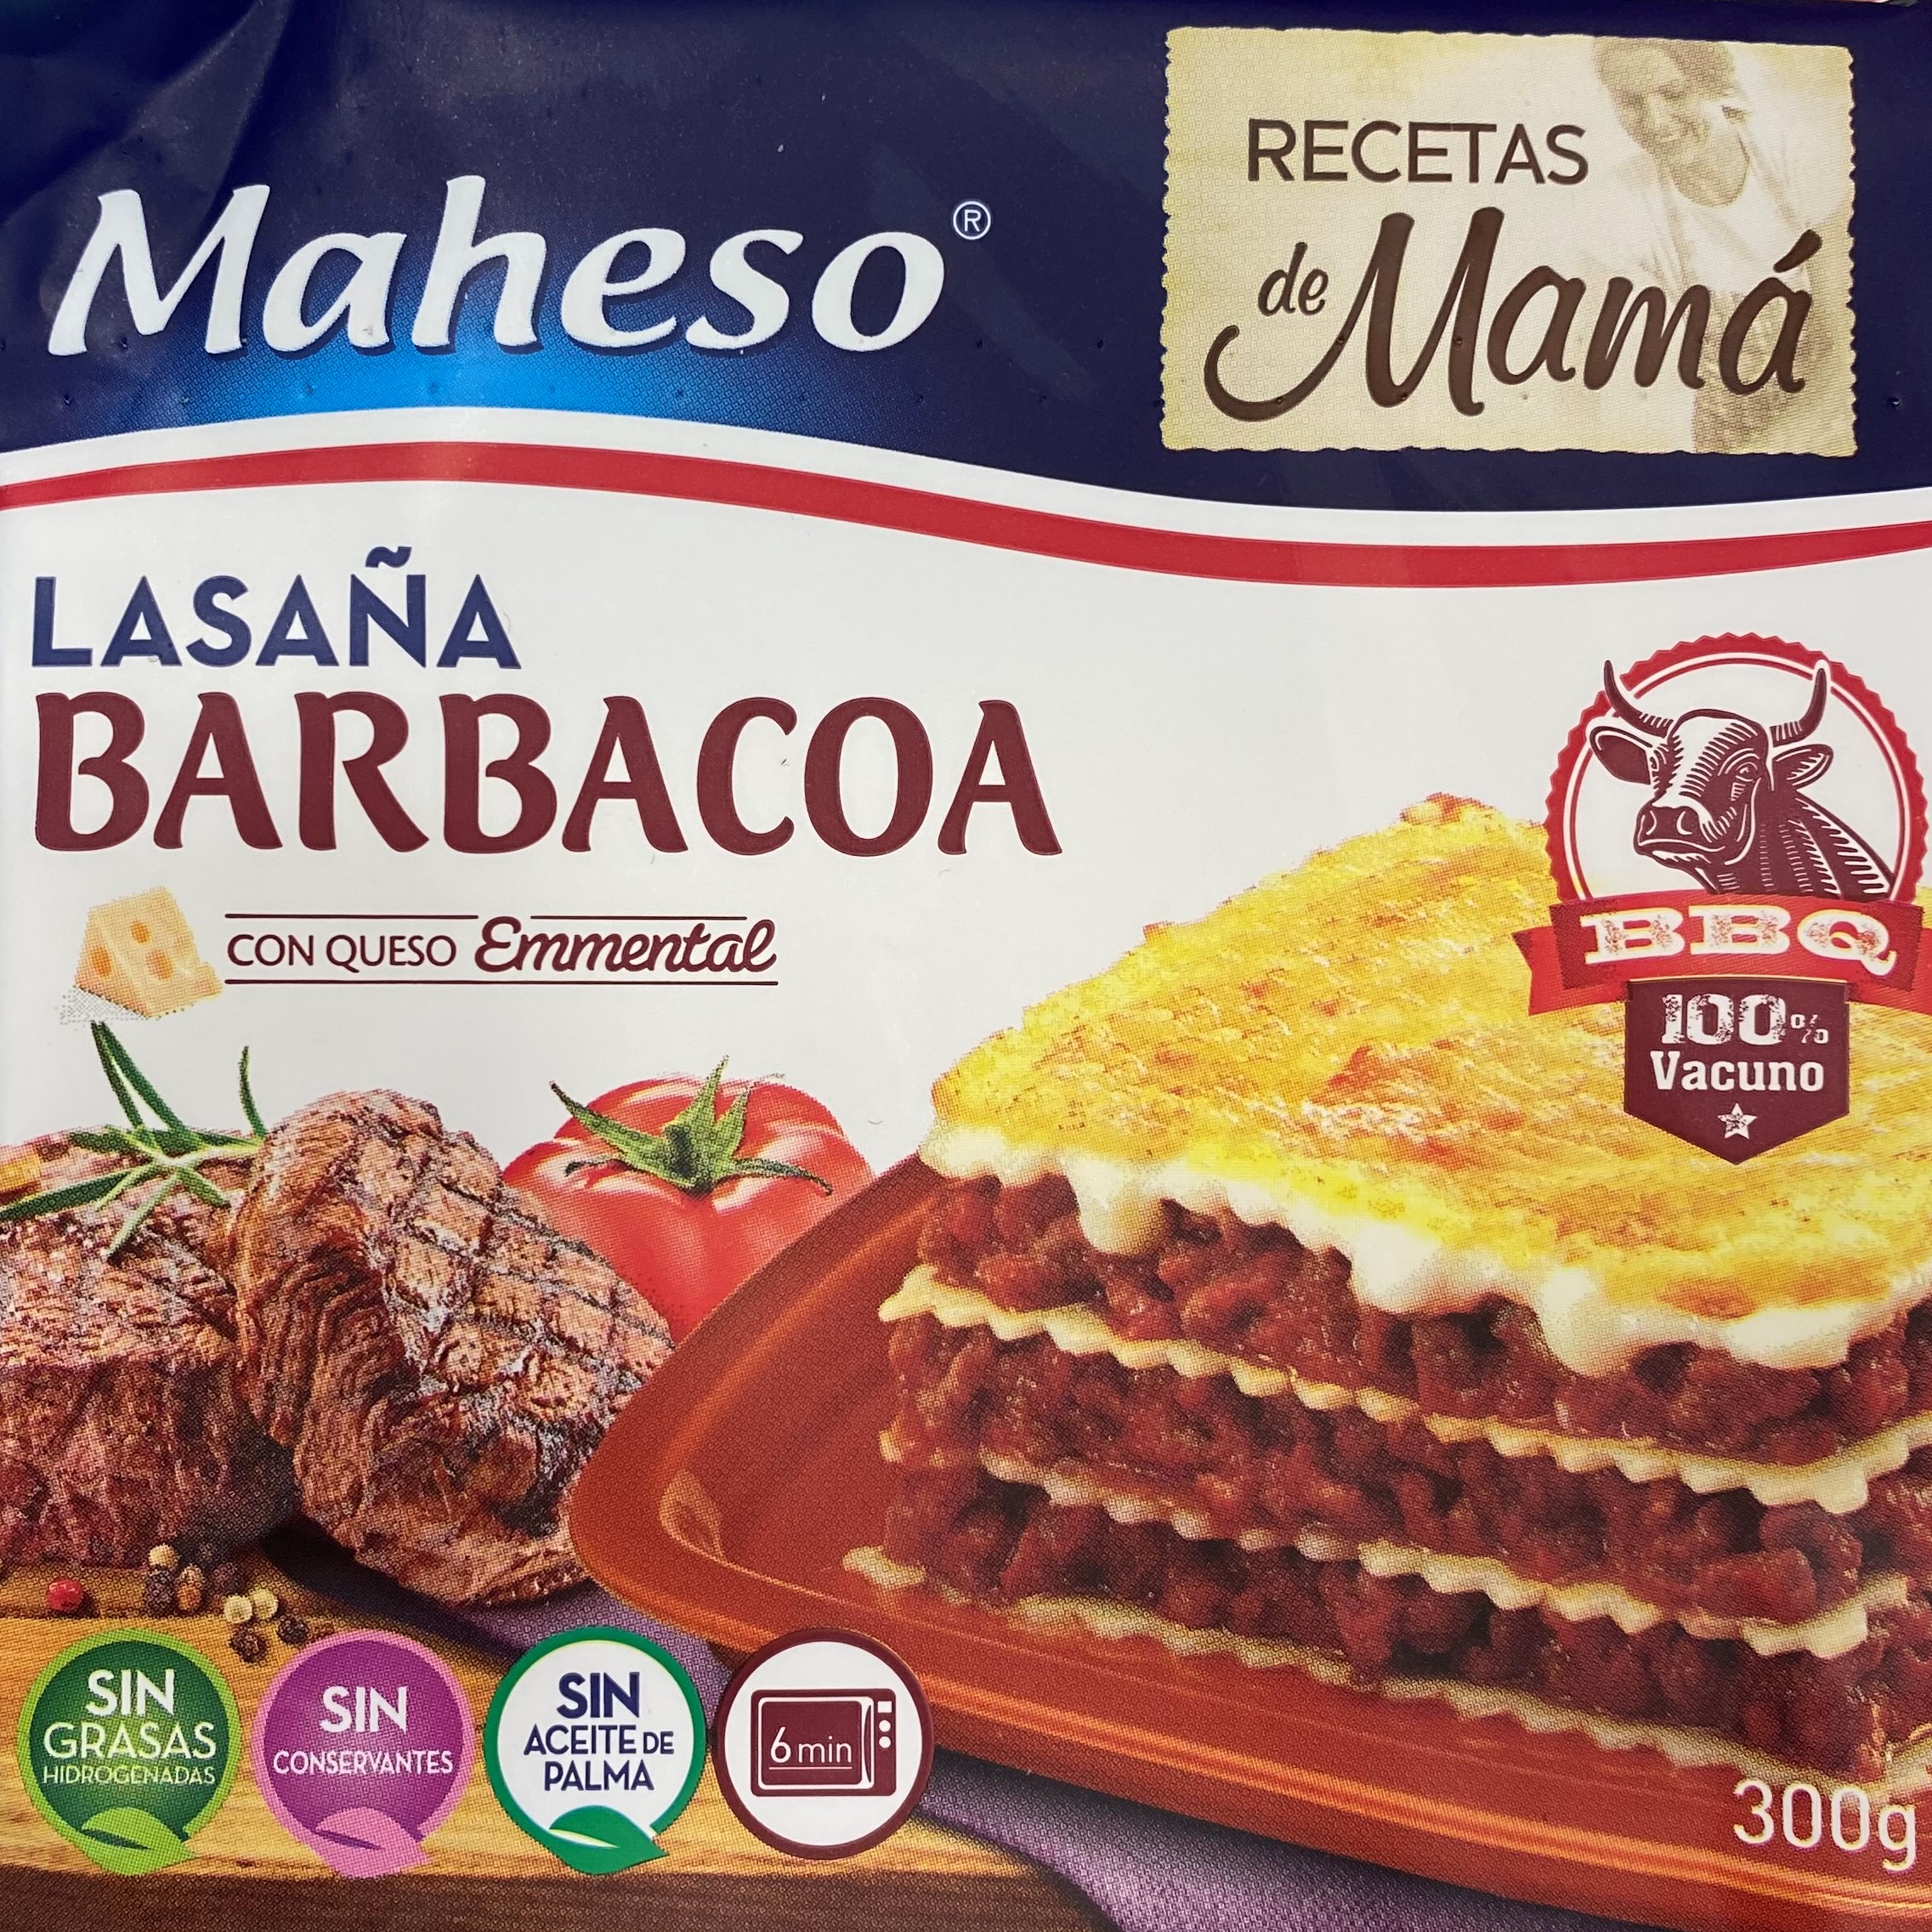 LASAÑA TERNERA BBQ MAHESO "RECETA DE MAMA"